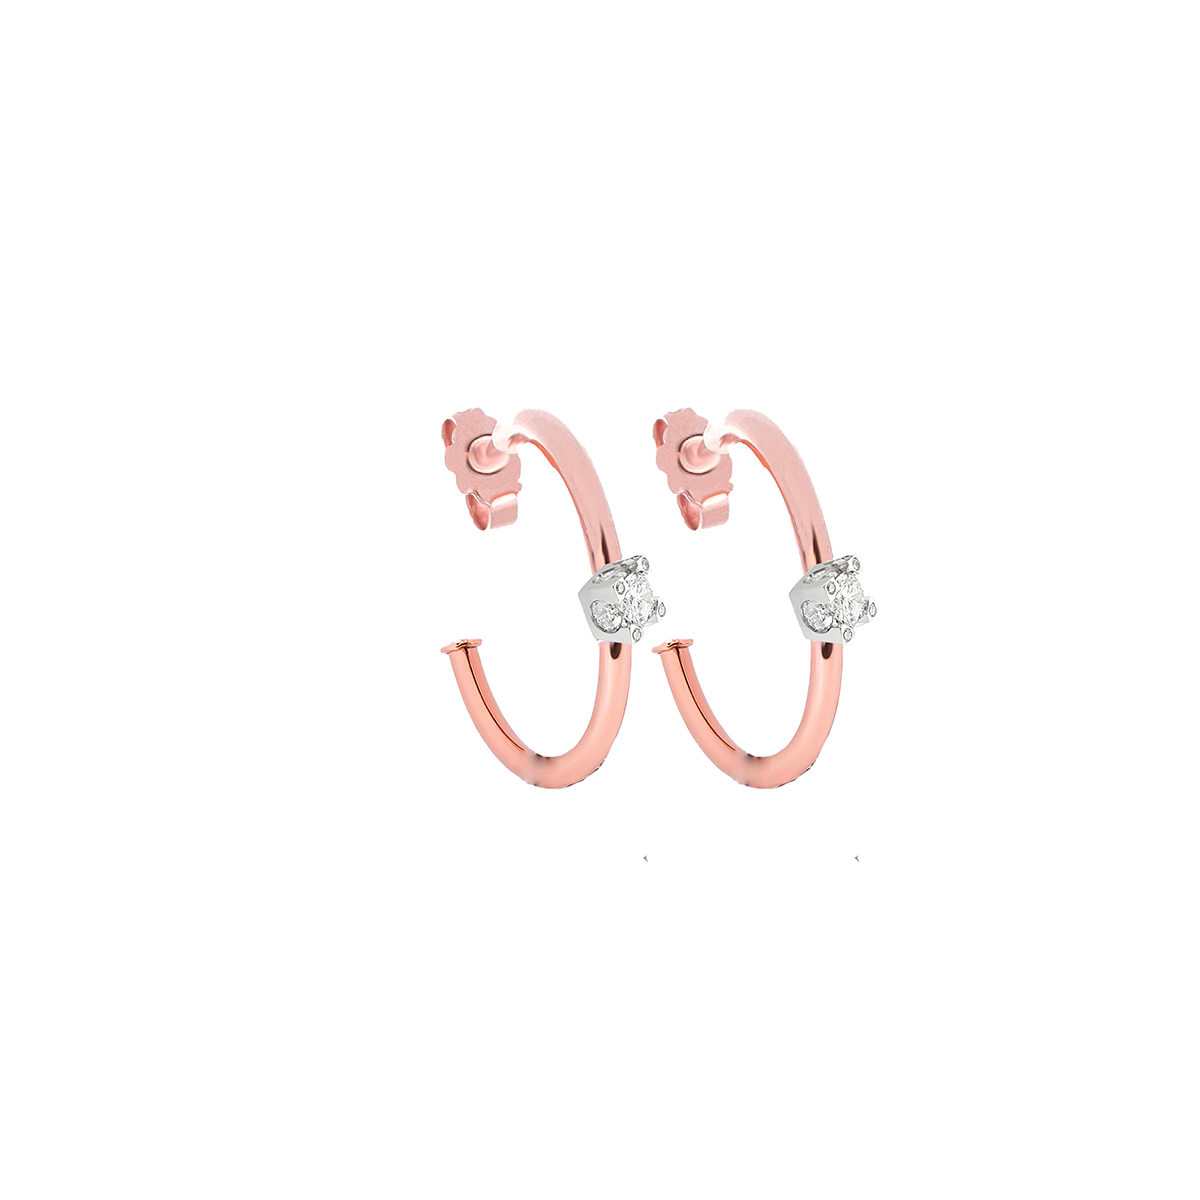 4D Diamond Semi-Circle Earrings in 18 K Rose Gold